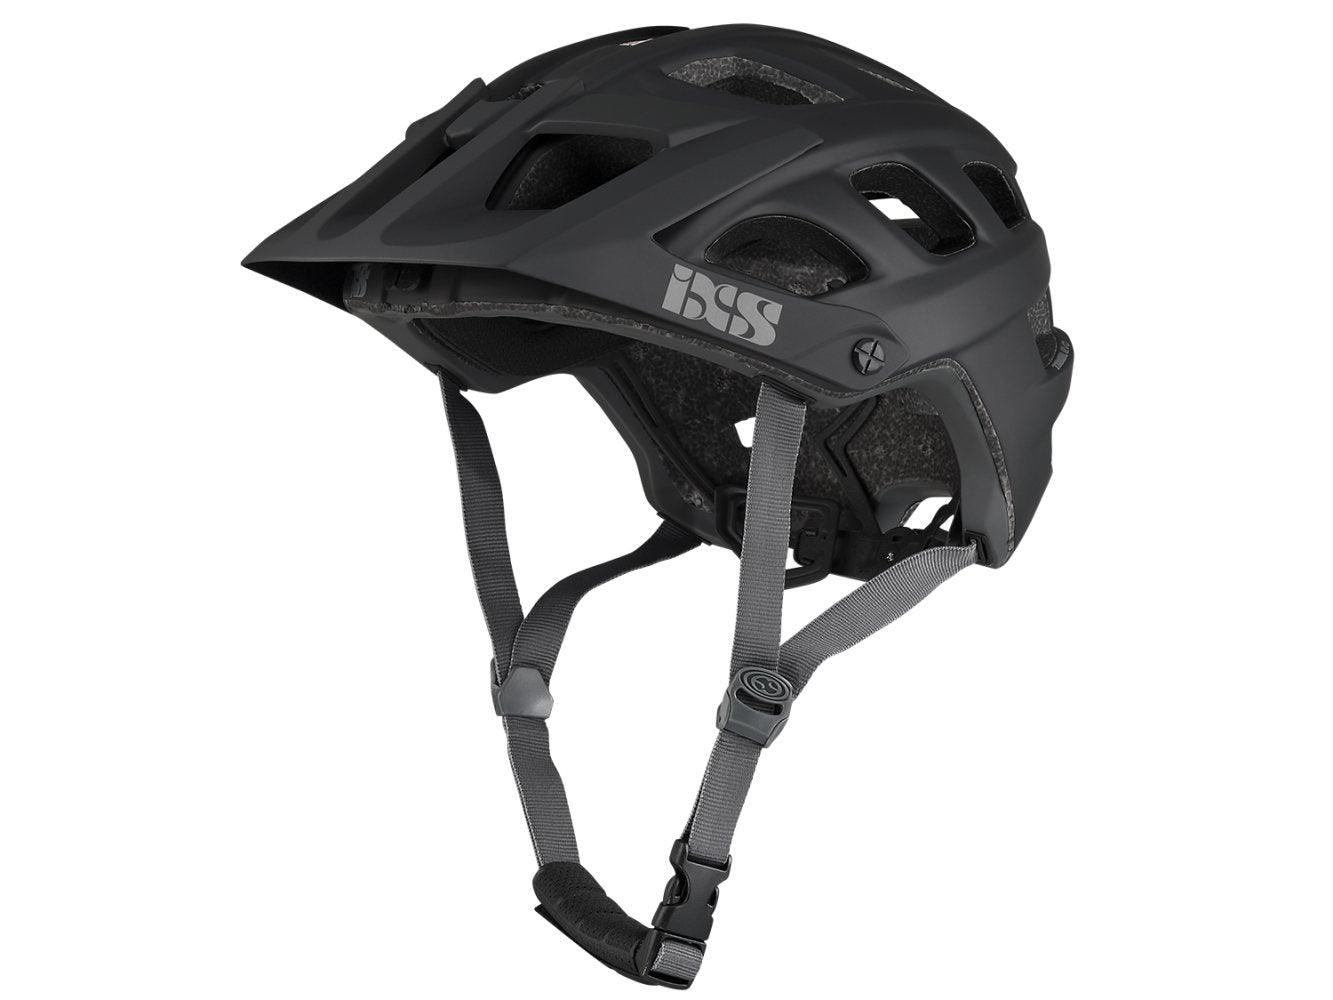 IXS Trail EVO helmet - Liquid-Life